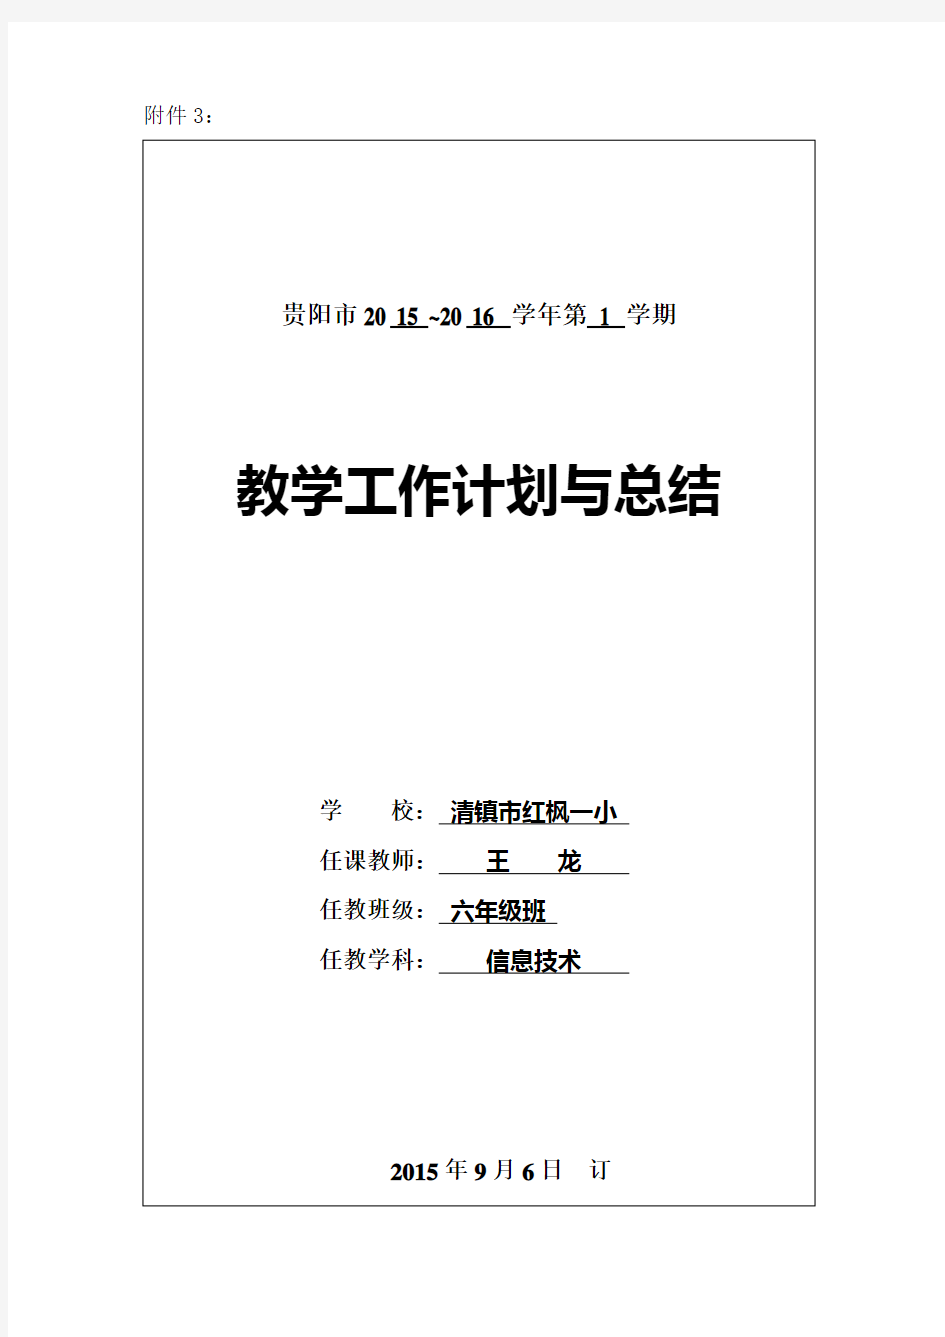 最新小学六年级信息技术上册教案贵州科技出版社